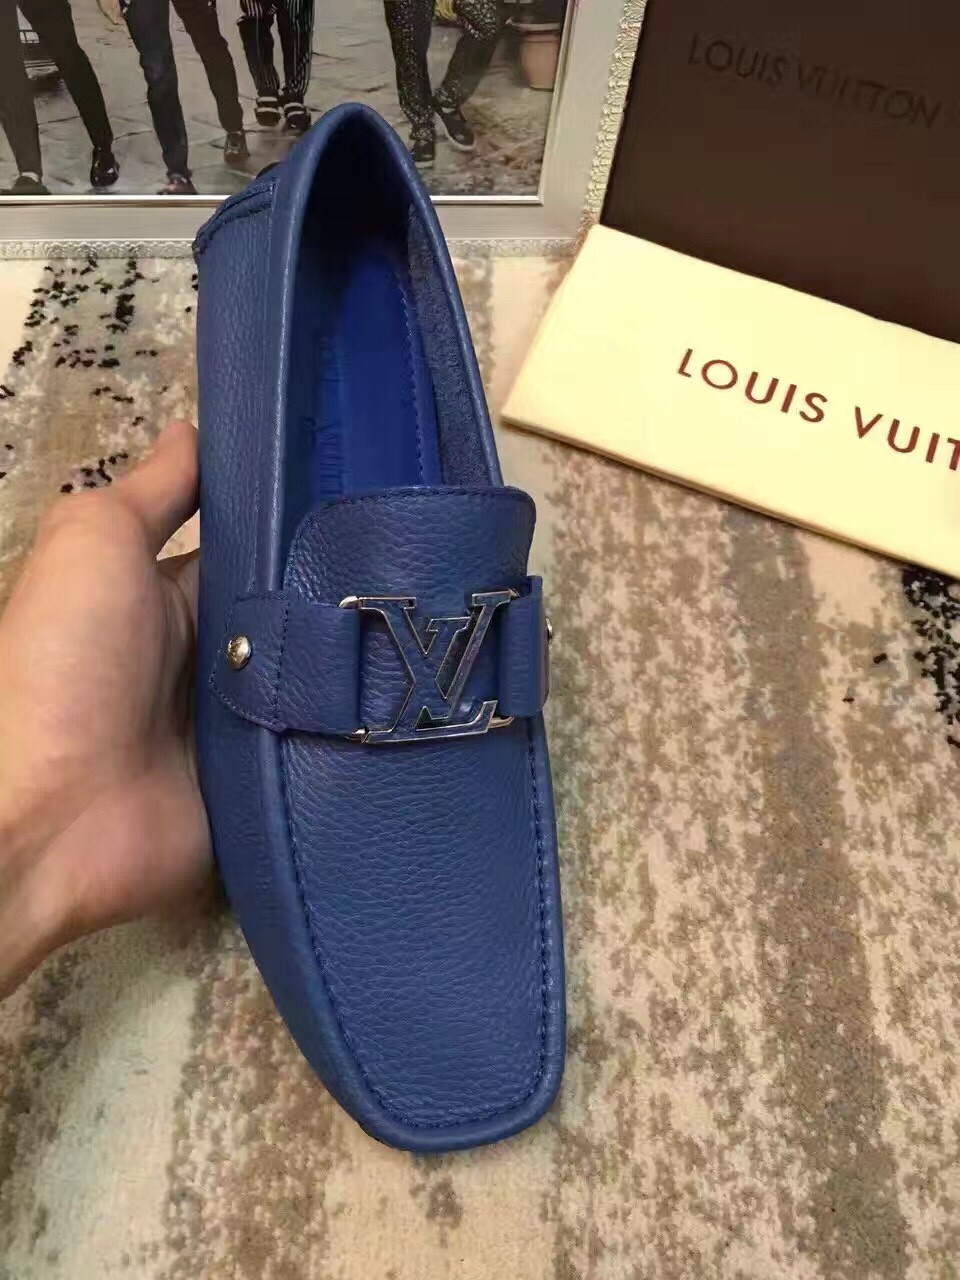 Giày lười nam Louis Vuitton siêu cấp - GNLV018